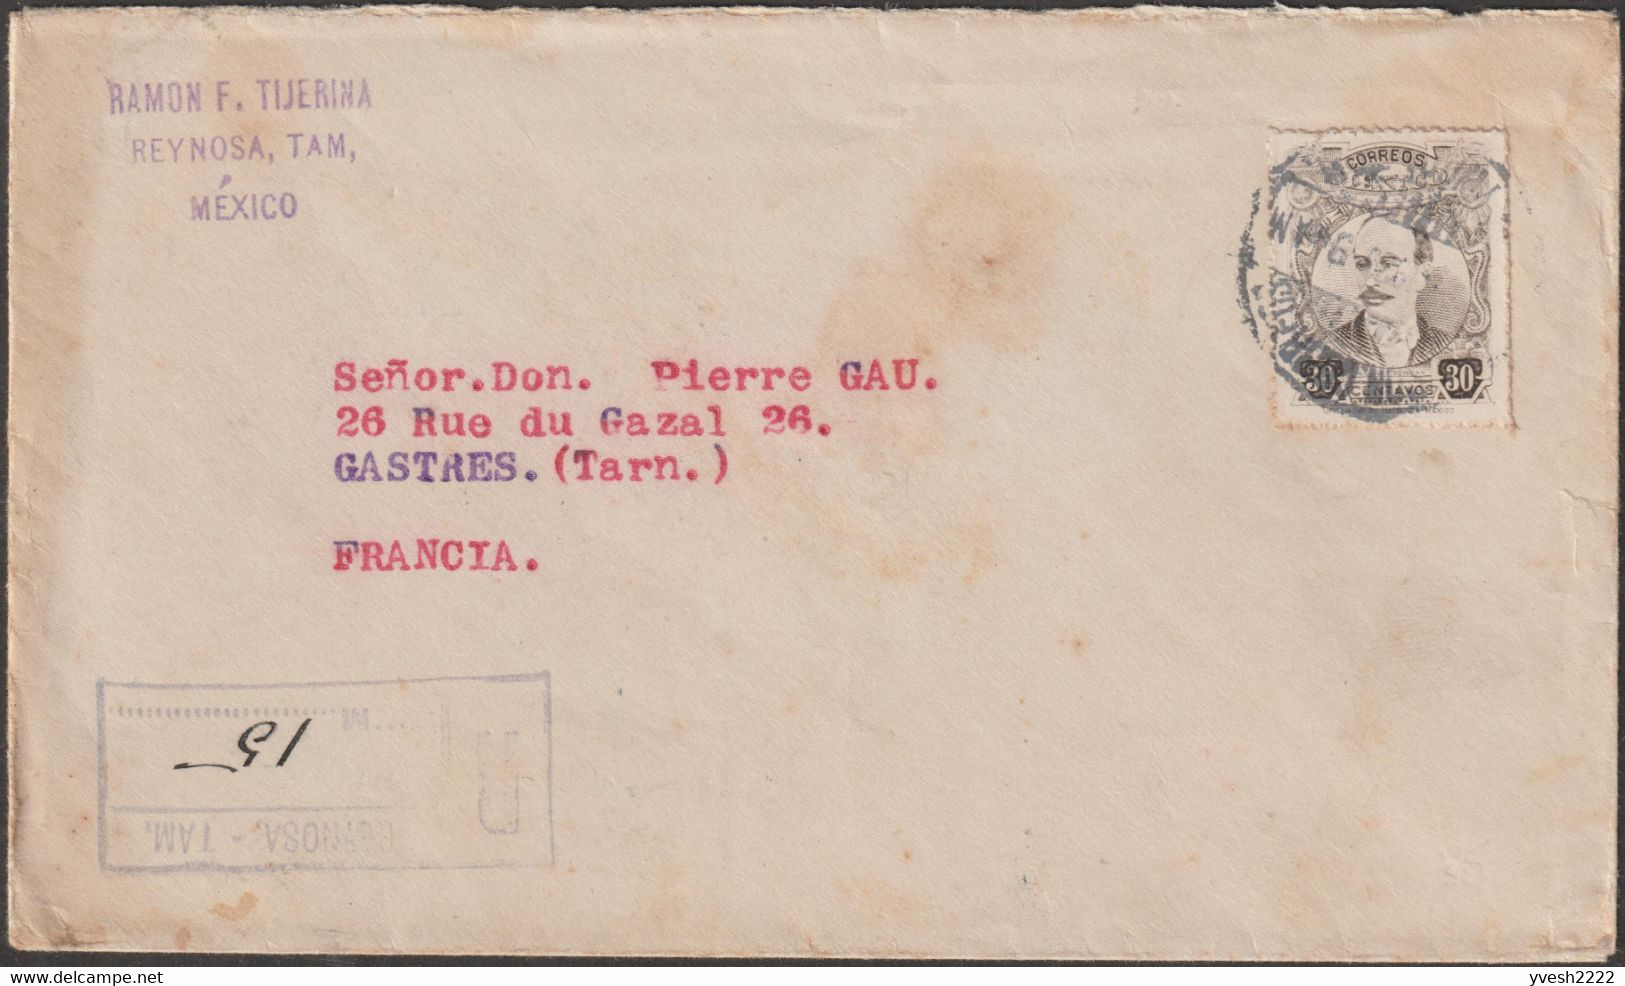 Mexique 1920 Et 1936. Deux Lettres Recommandées Avec Vignettes Postales Bleue Et Rouges. Cactus, Serpent, Aigle - Aerograms